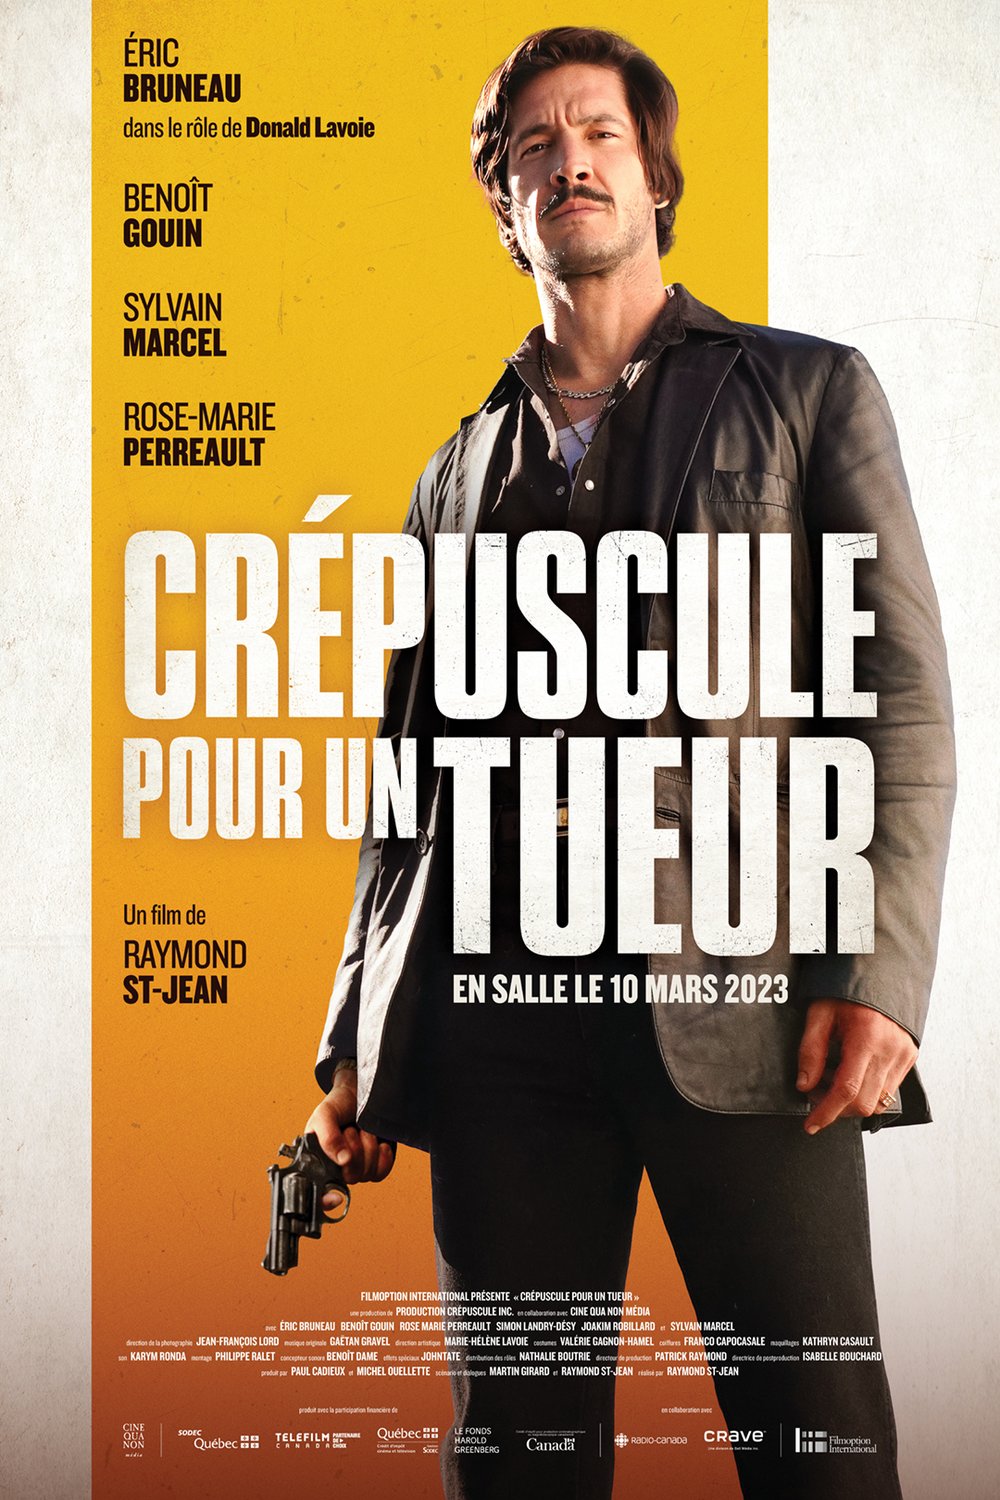 Poster of the movie Crépuscule pour un tueur